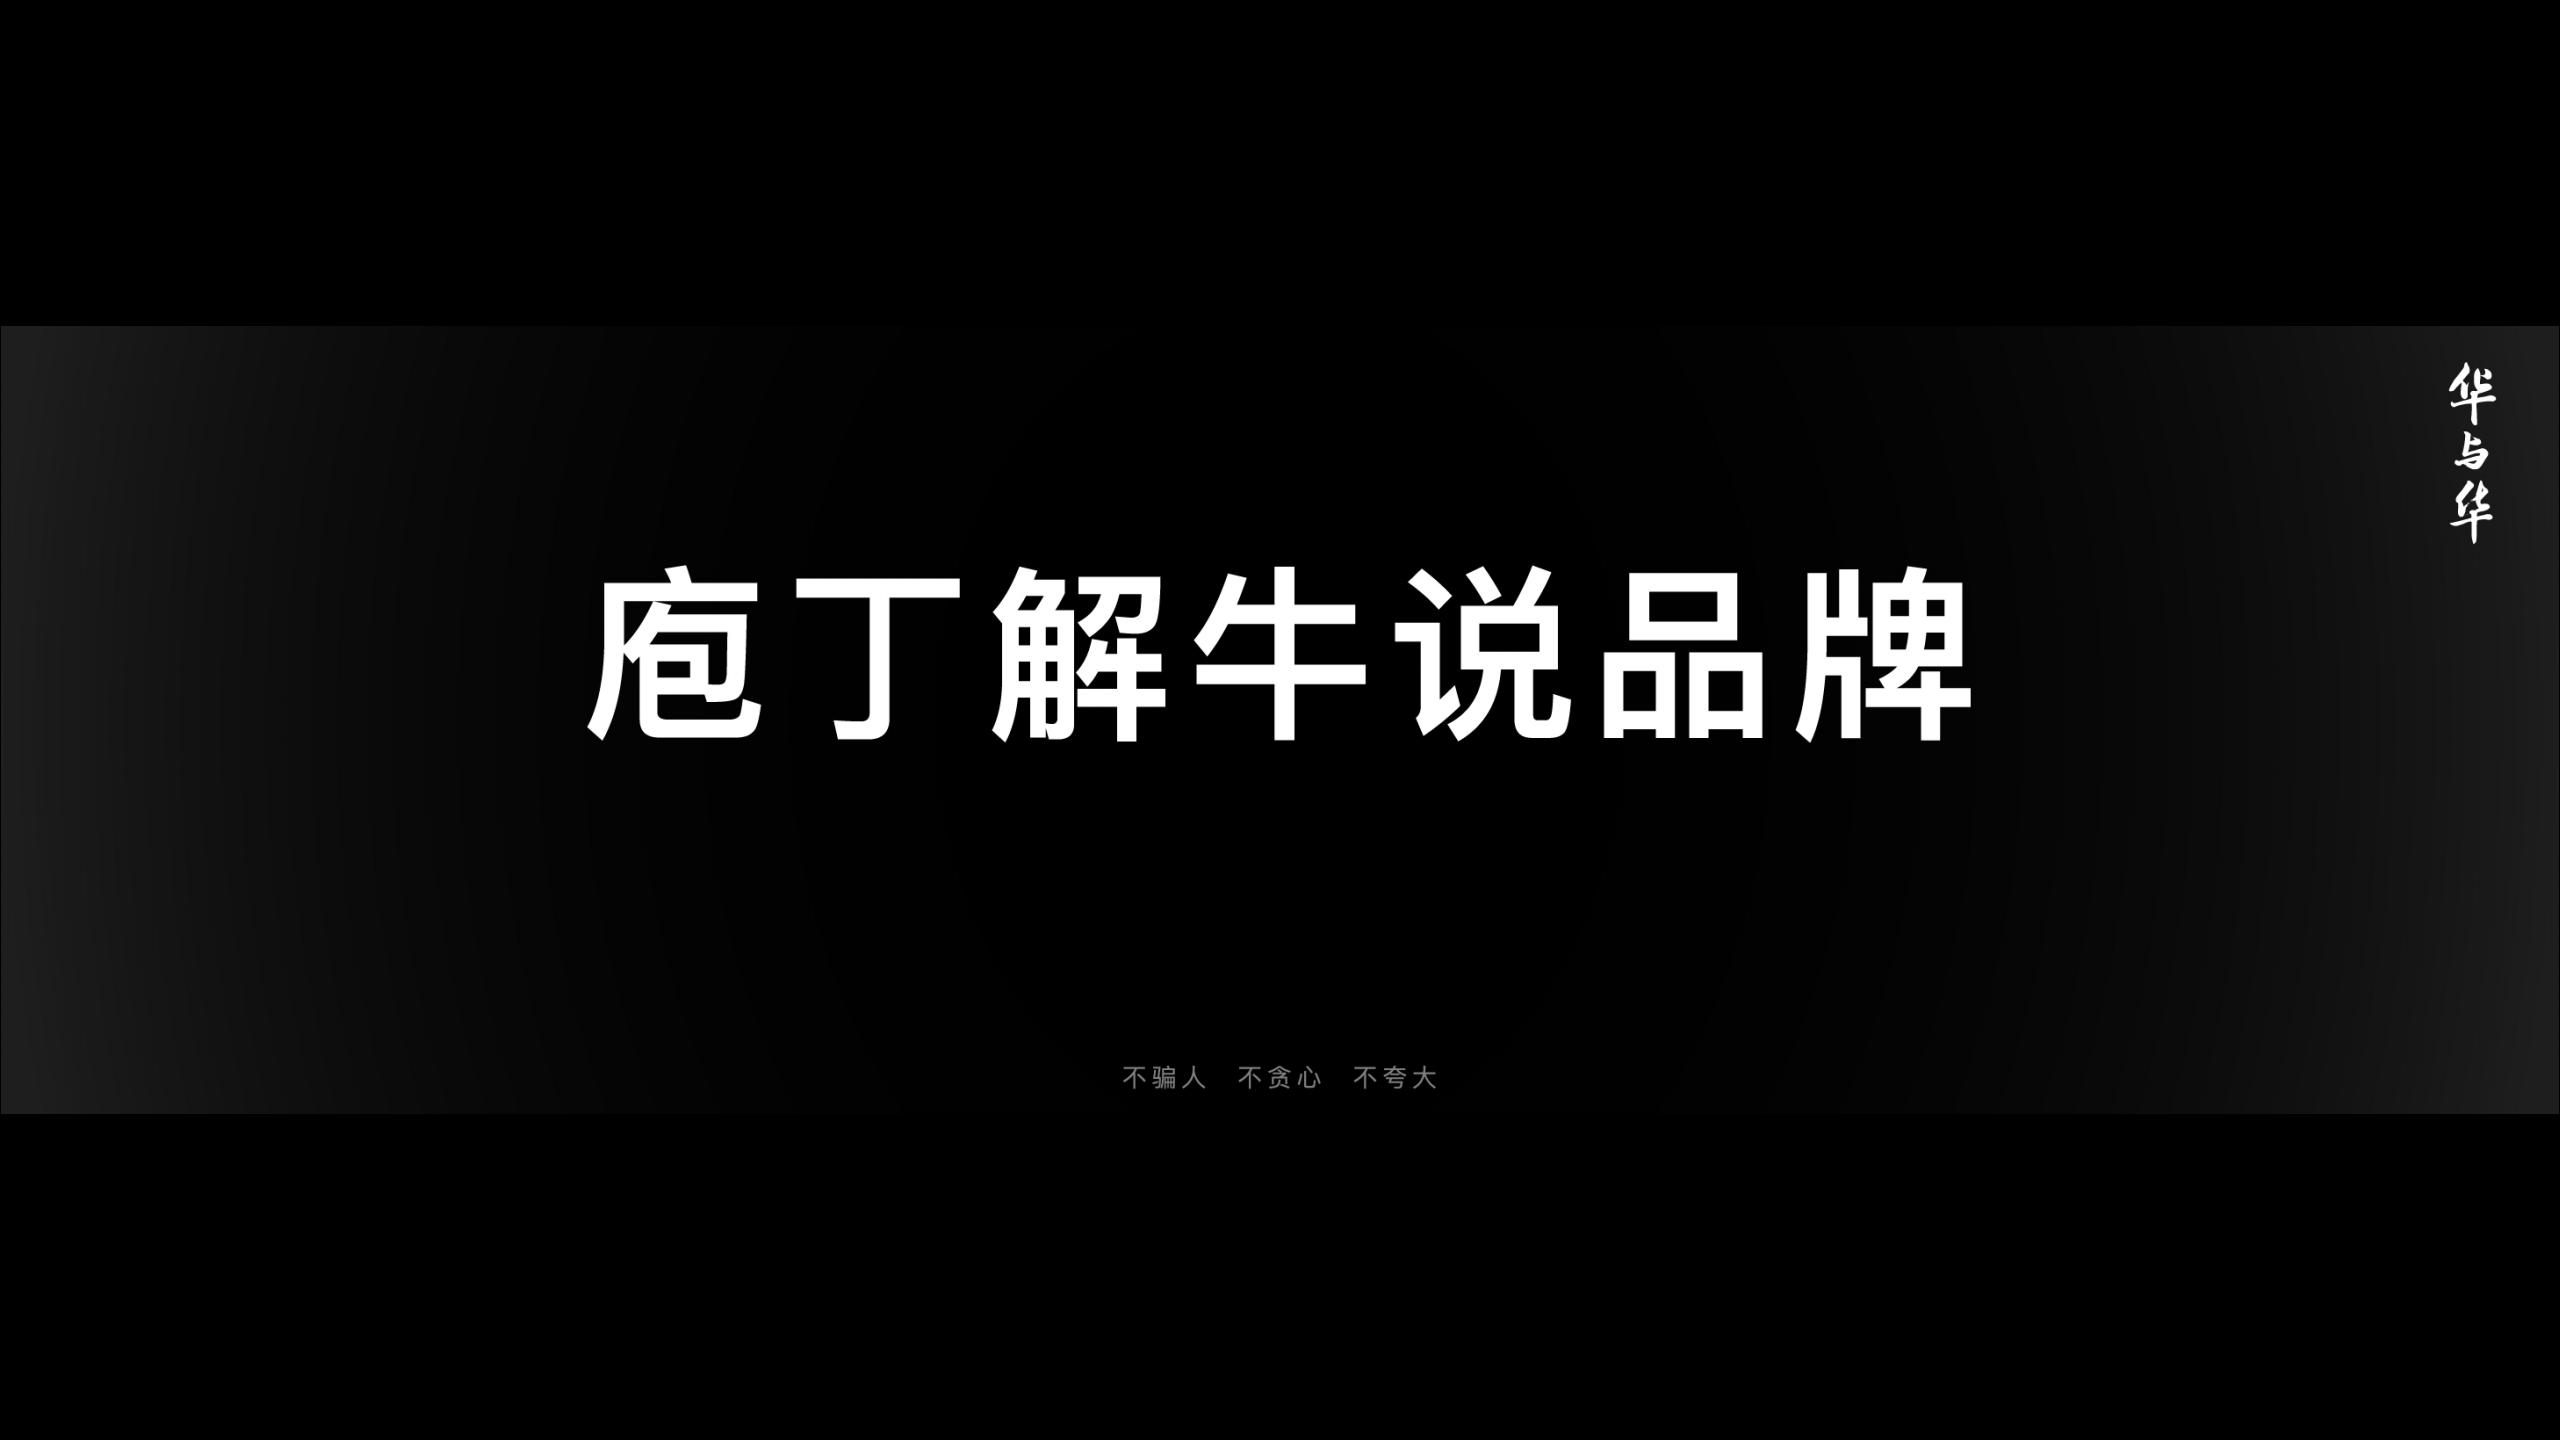 华杉-定心华与华成就百年品牌_04.jpg